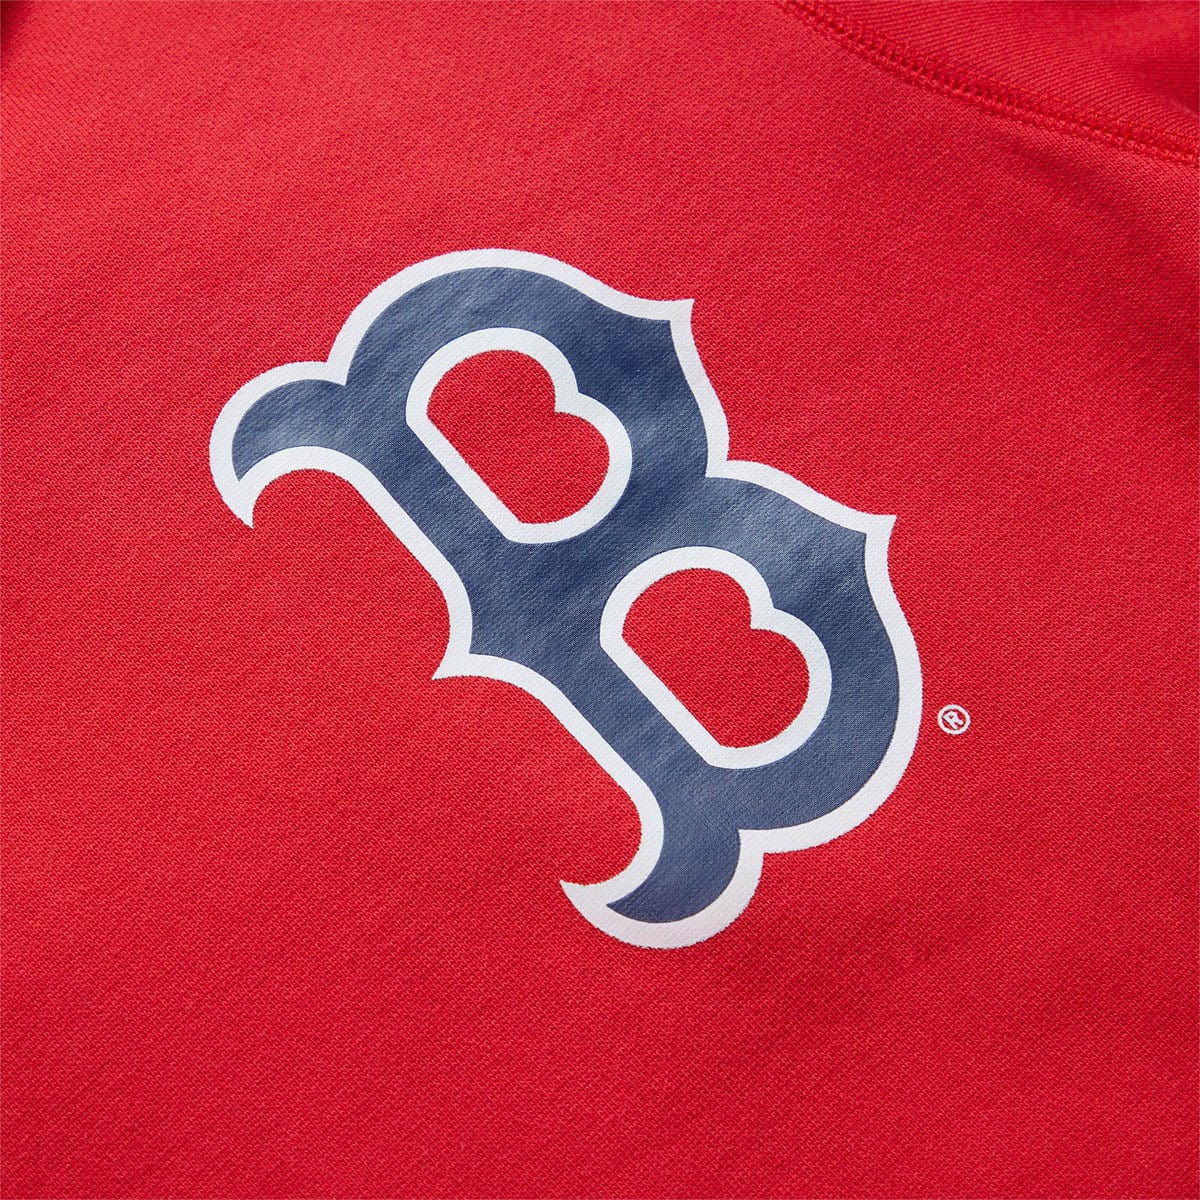 New Era Hoodies & Sweatshirts BOSTON RED SOX HOODIE